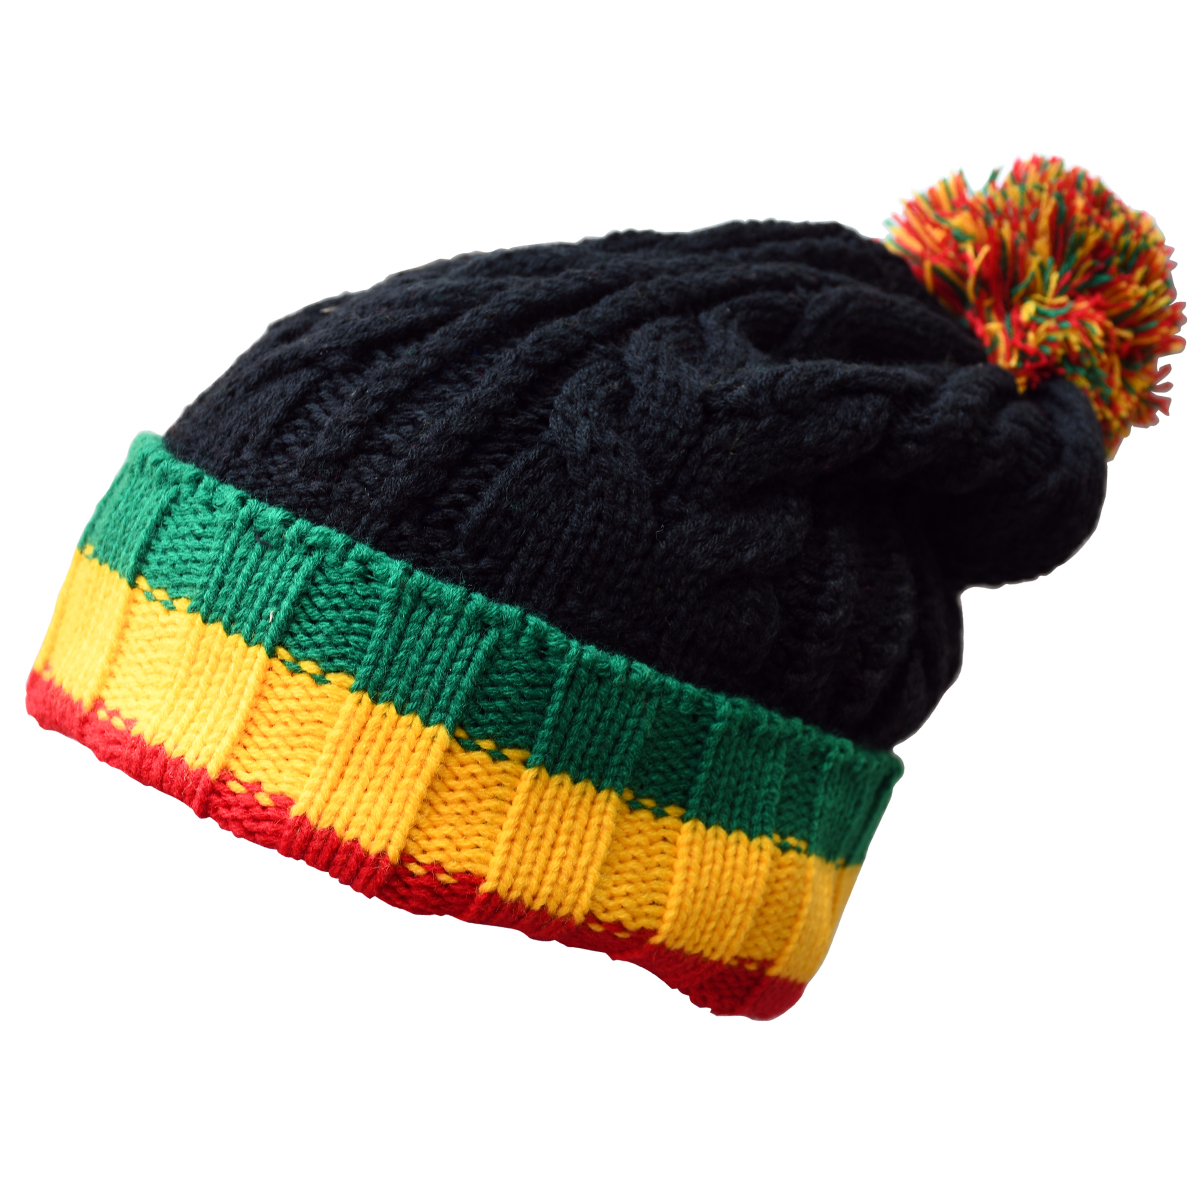 Rasta Stripes California Republic Reggae Beanie Hat with Pom Pom